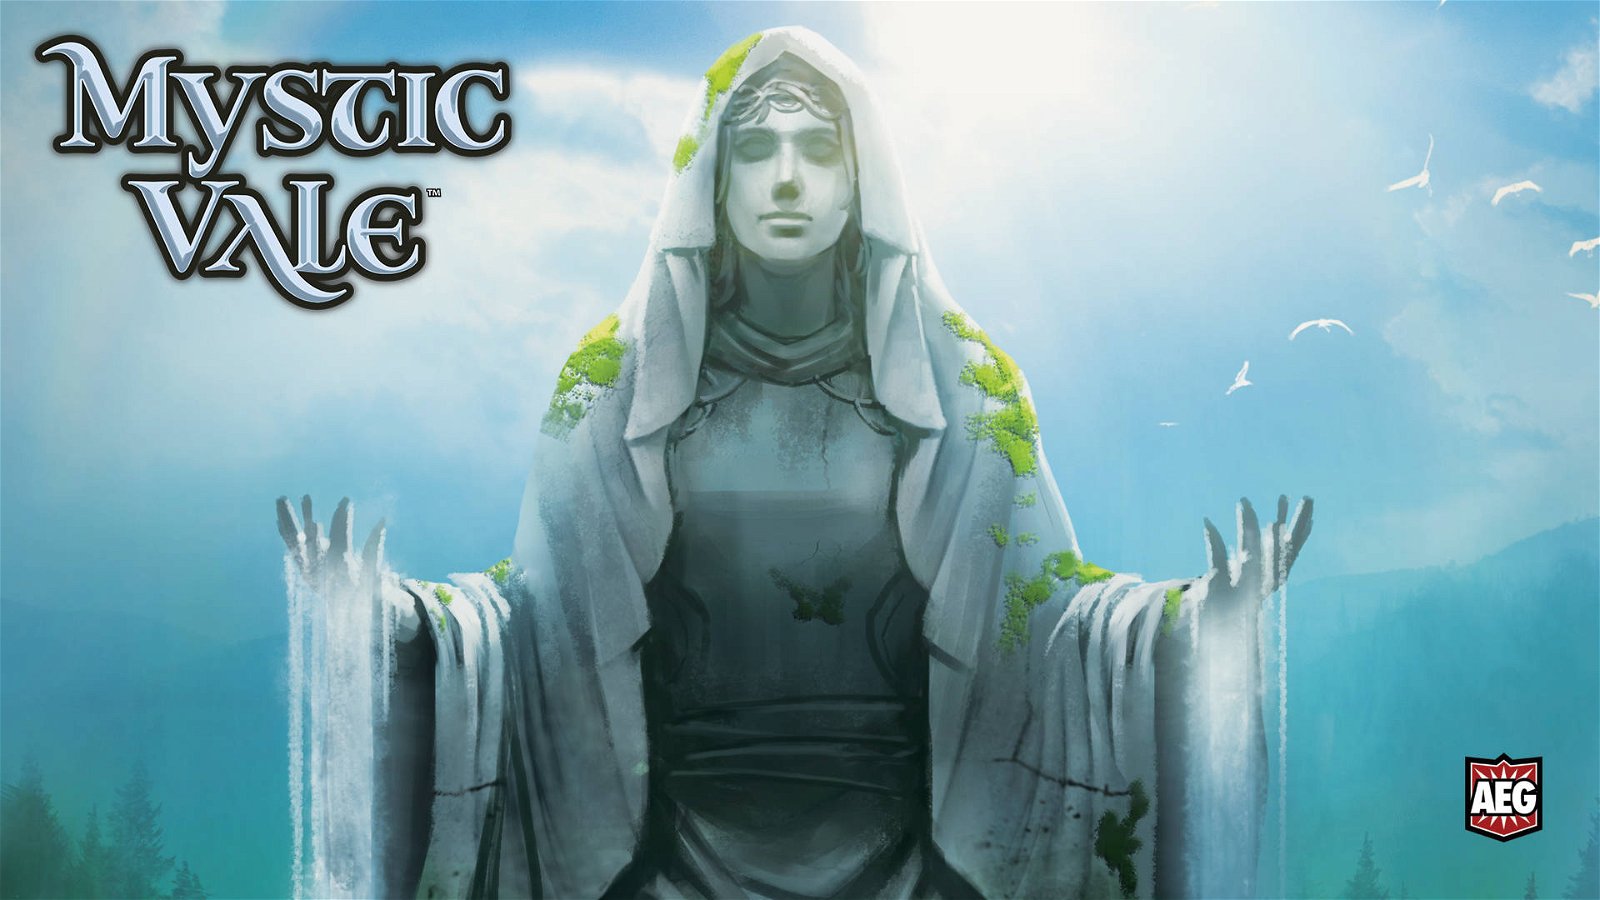 Immagine di Nomad Games e AEG insieme per l’edizione digitale di Mystic Vale